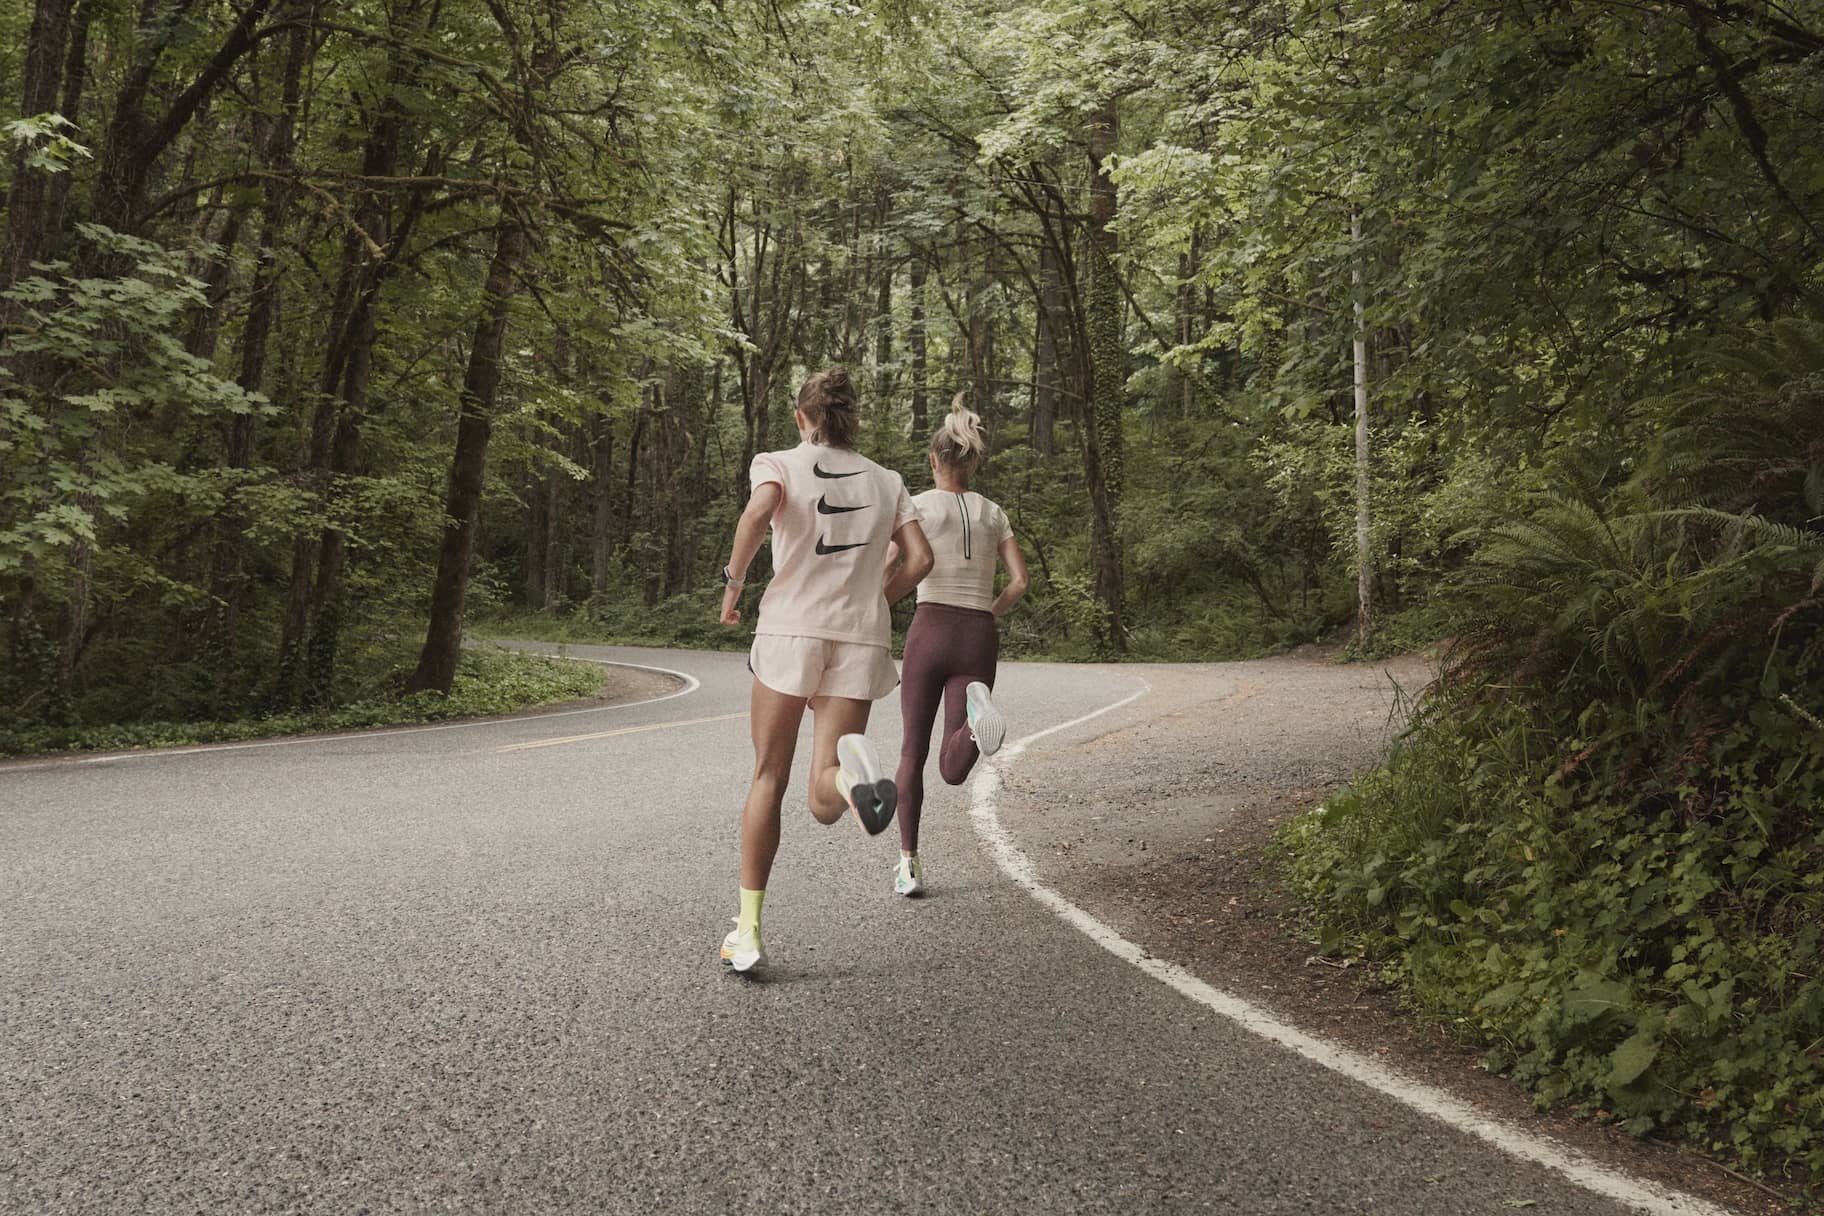 Nike running schuhe - Bewundern Sie unserem Gewinner